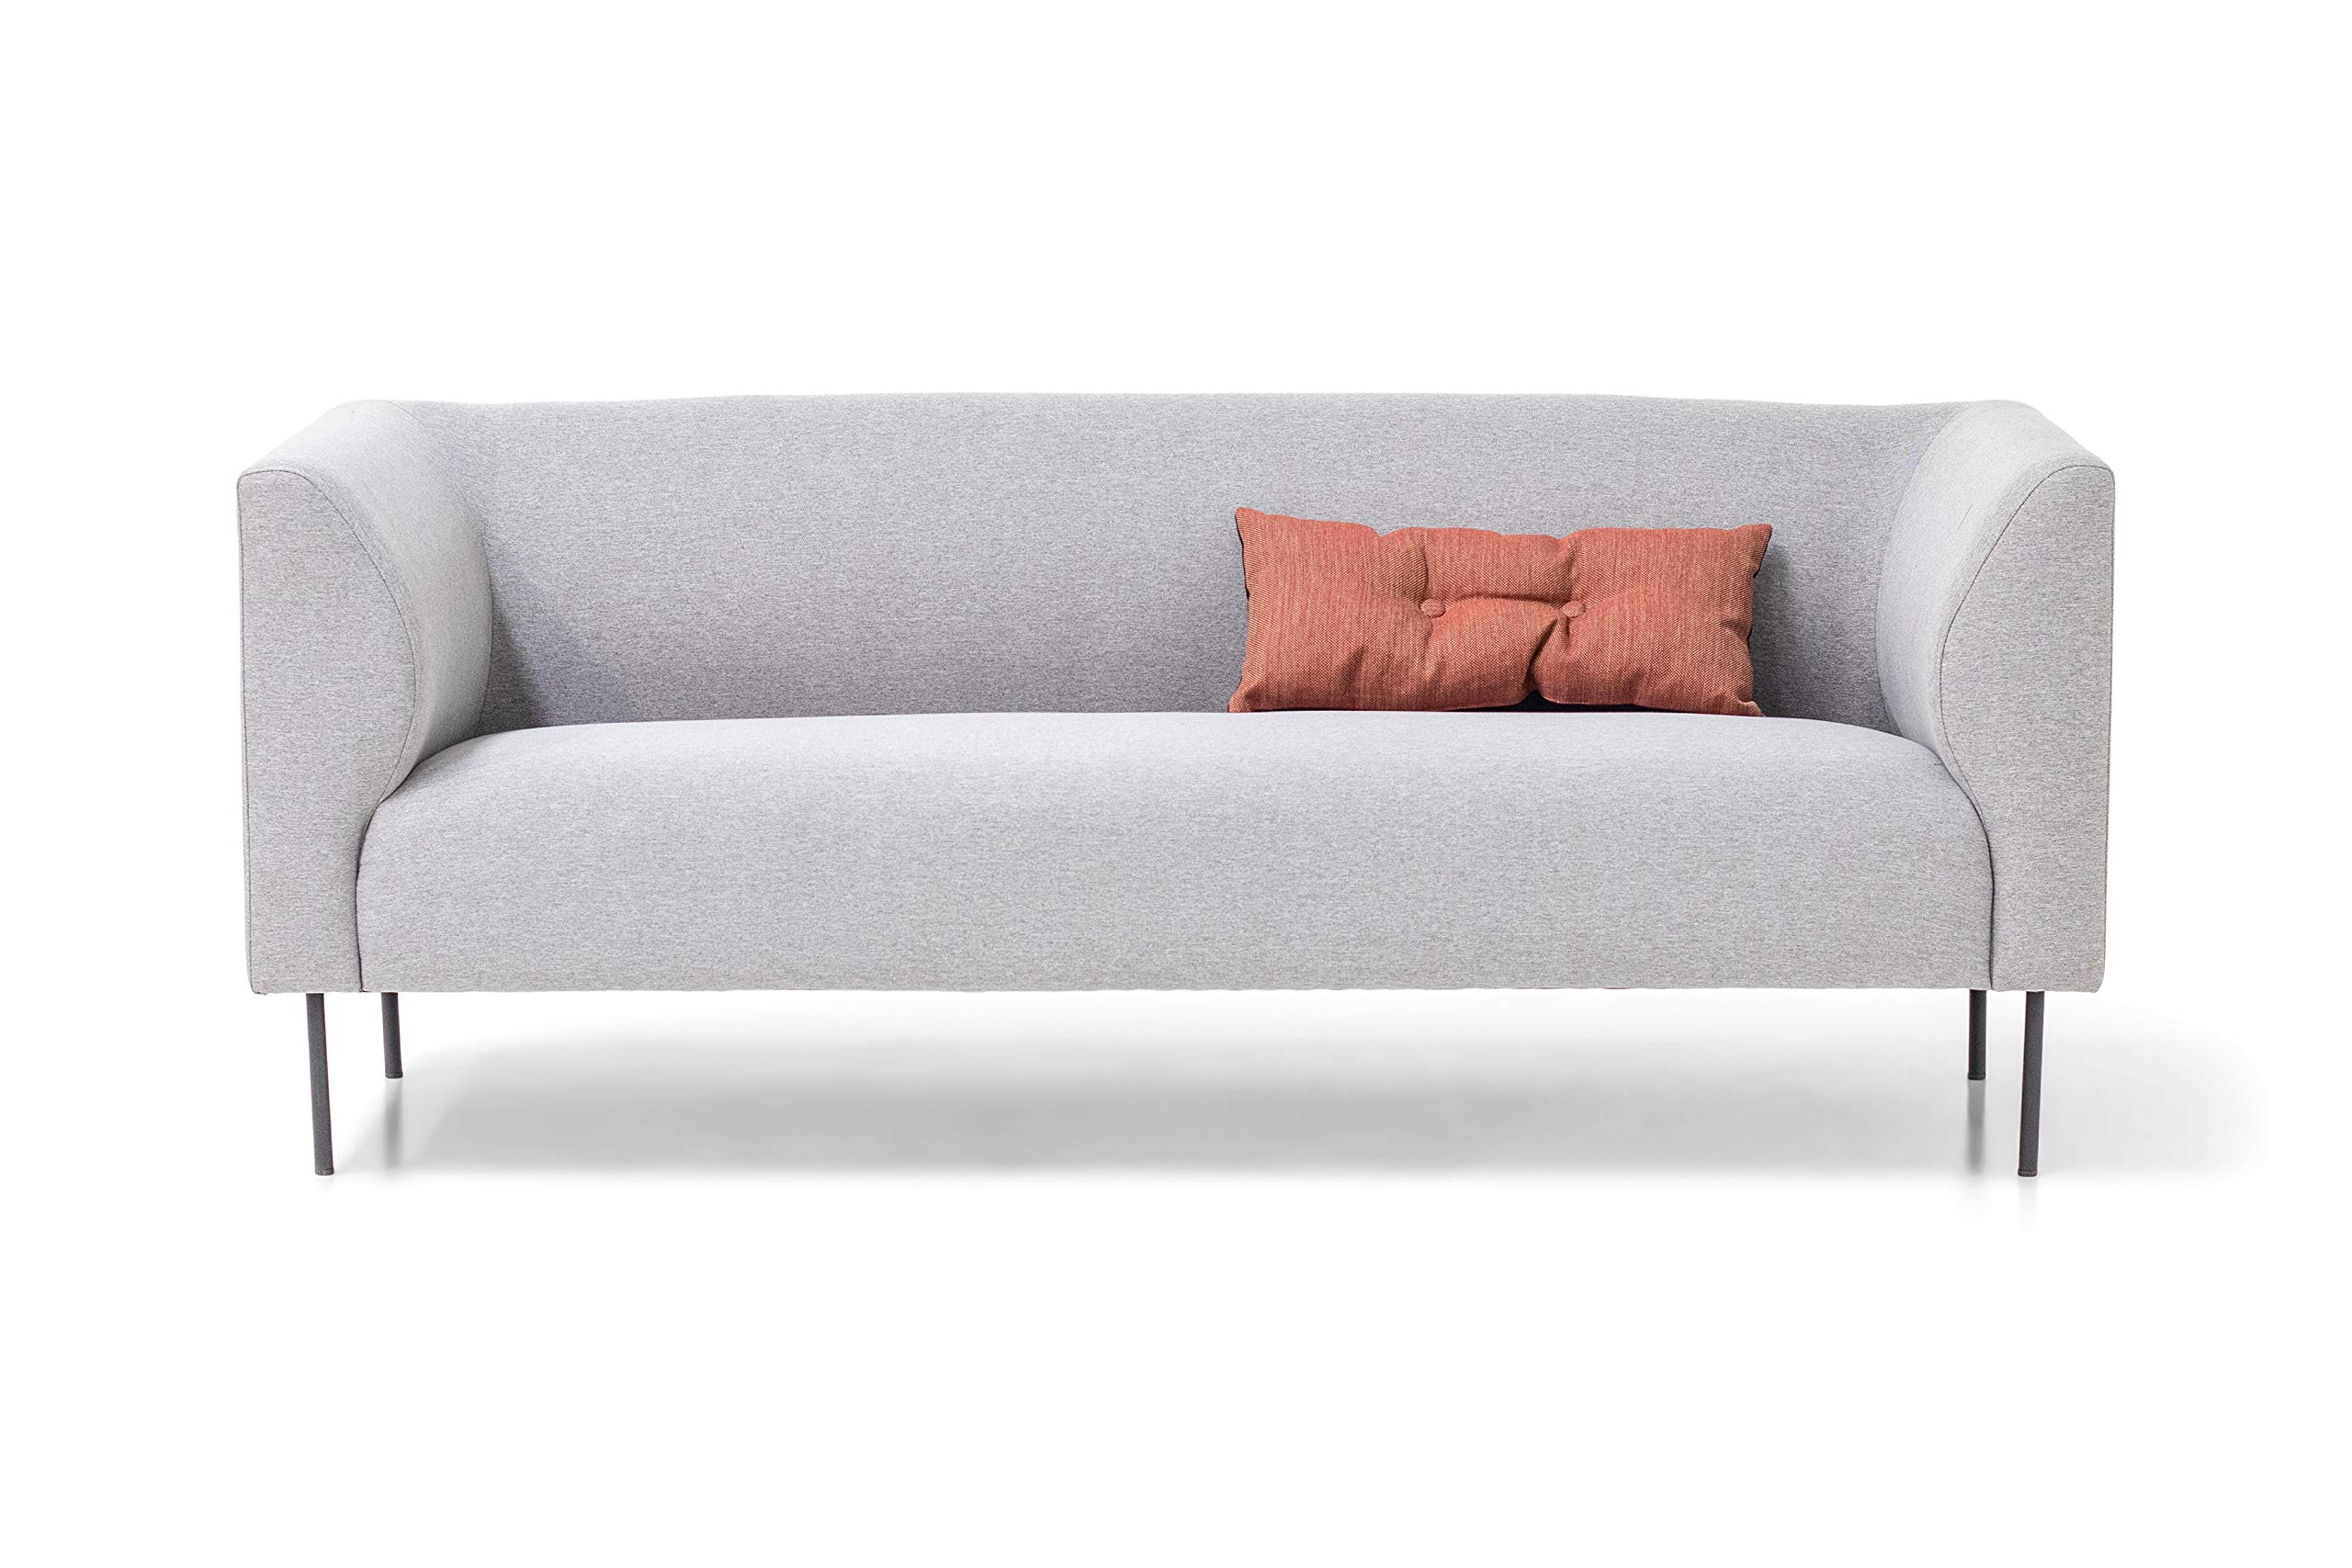 Homexperts Kerstin 3-Sitzer Sofa, Hellgrau, 185 x 74 x 76cm (BxHxT)